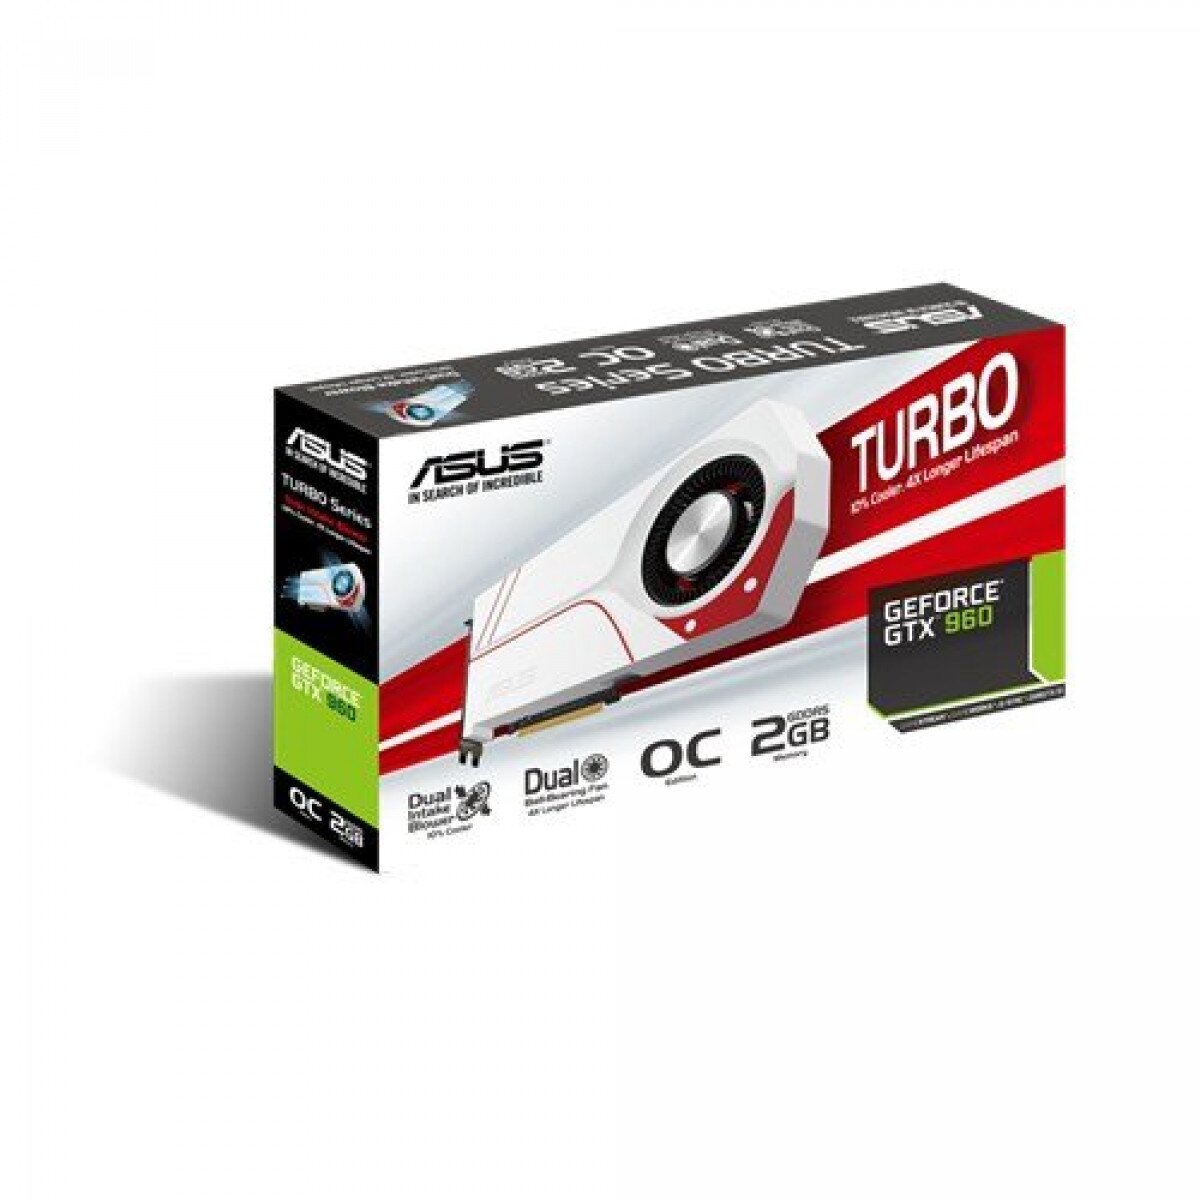 Buy Asus Turbo Geforce Gtx 960 Graphic Card Online In Pakistan Tejar Pk